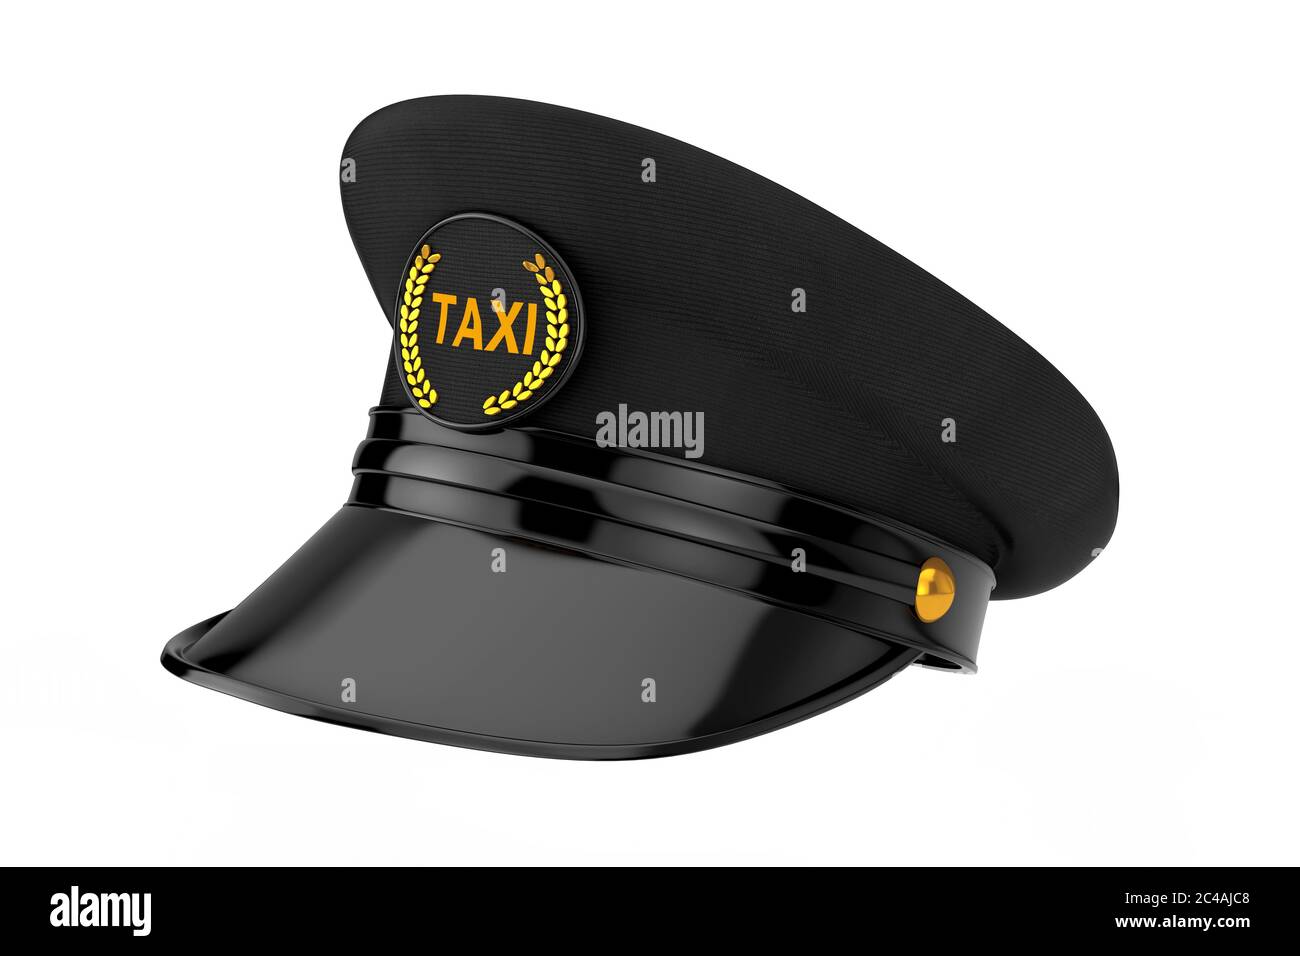 Taxi cab job worker Banque d'images détourées - Alamy